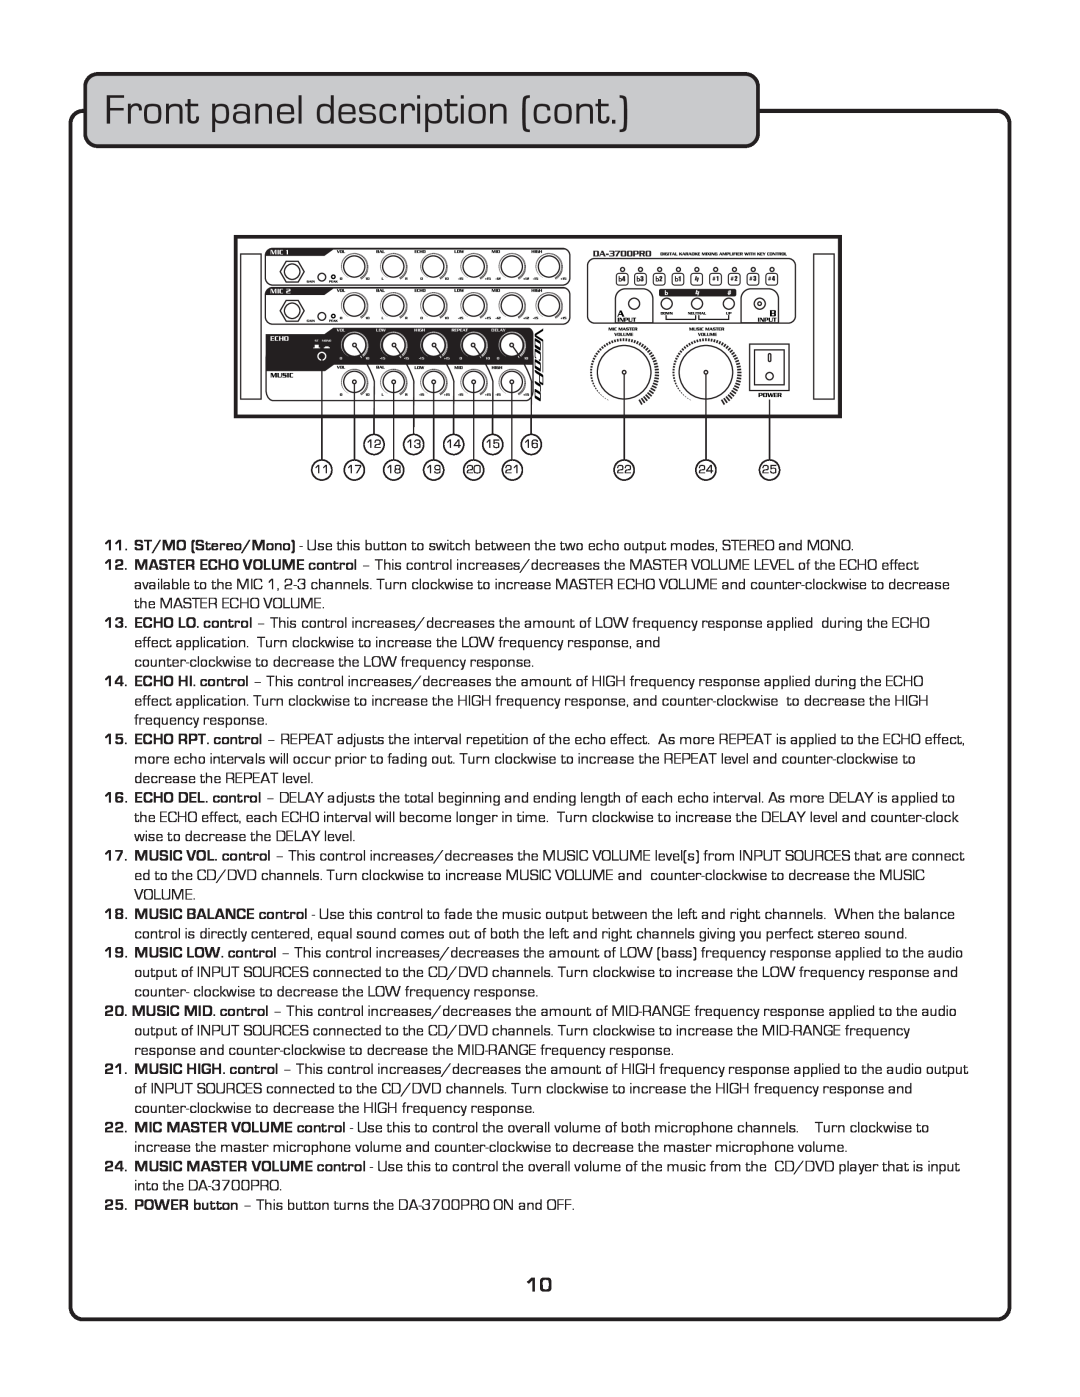 VocoPro DA-3700 owner manual Front panel description cont 